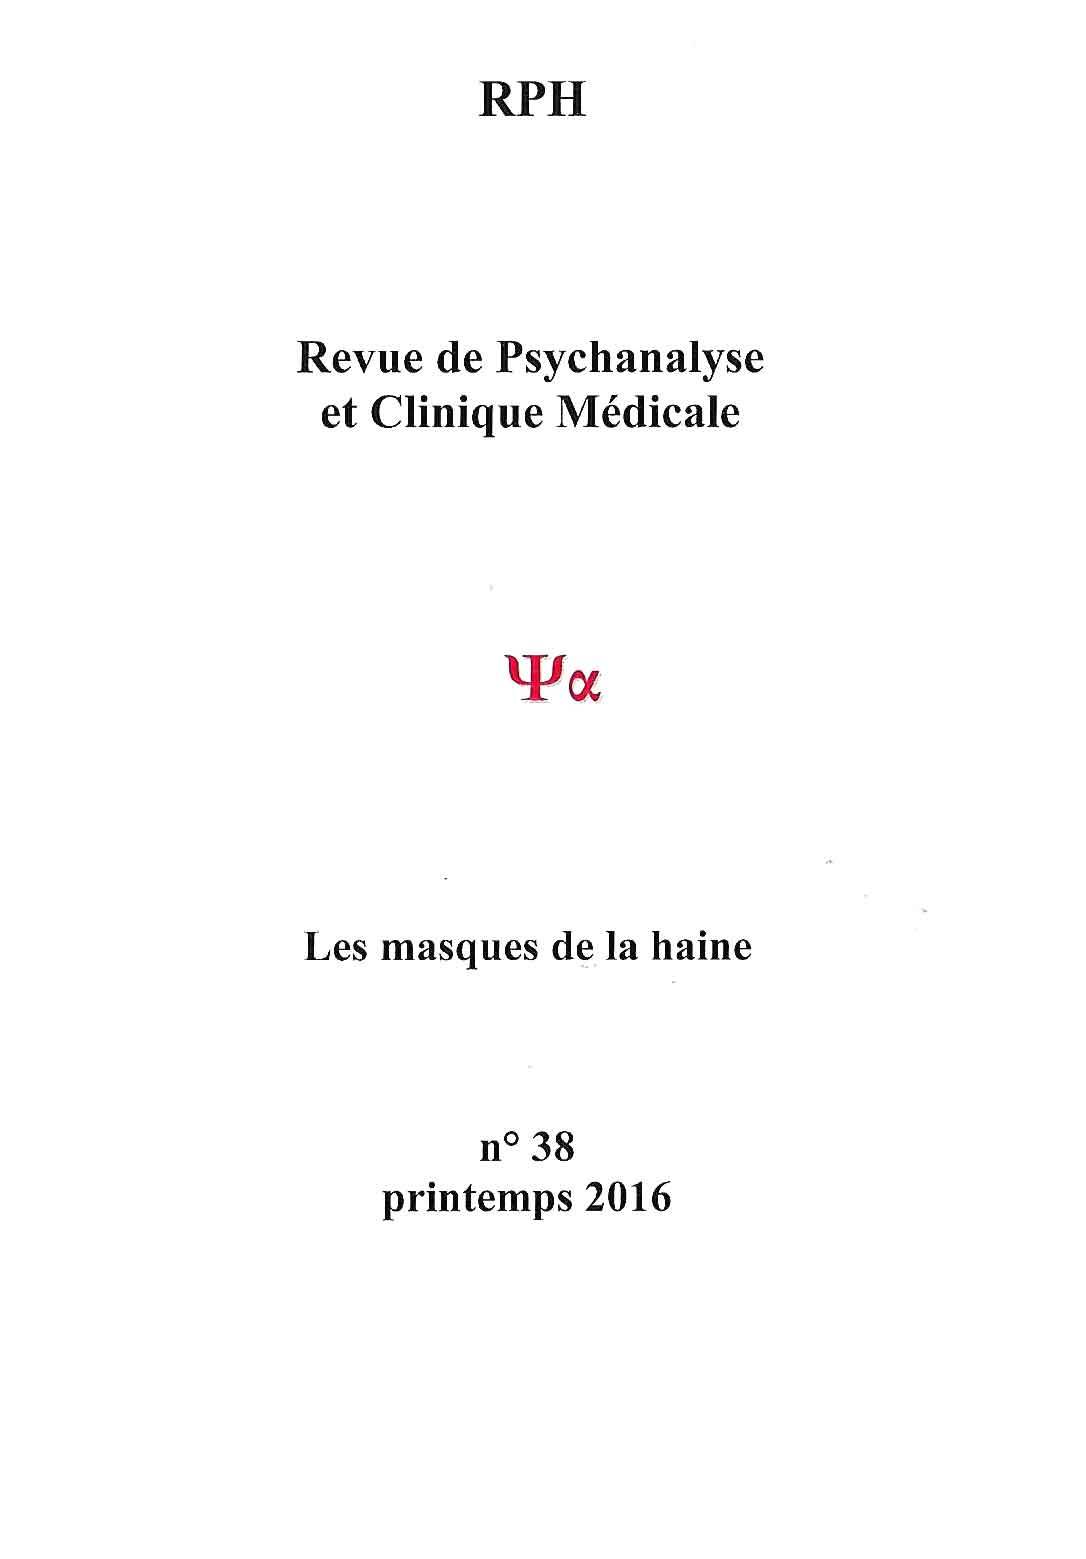 Consulter revue de psychanalyse à Paris 18è